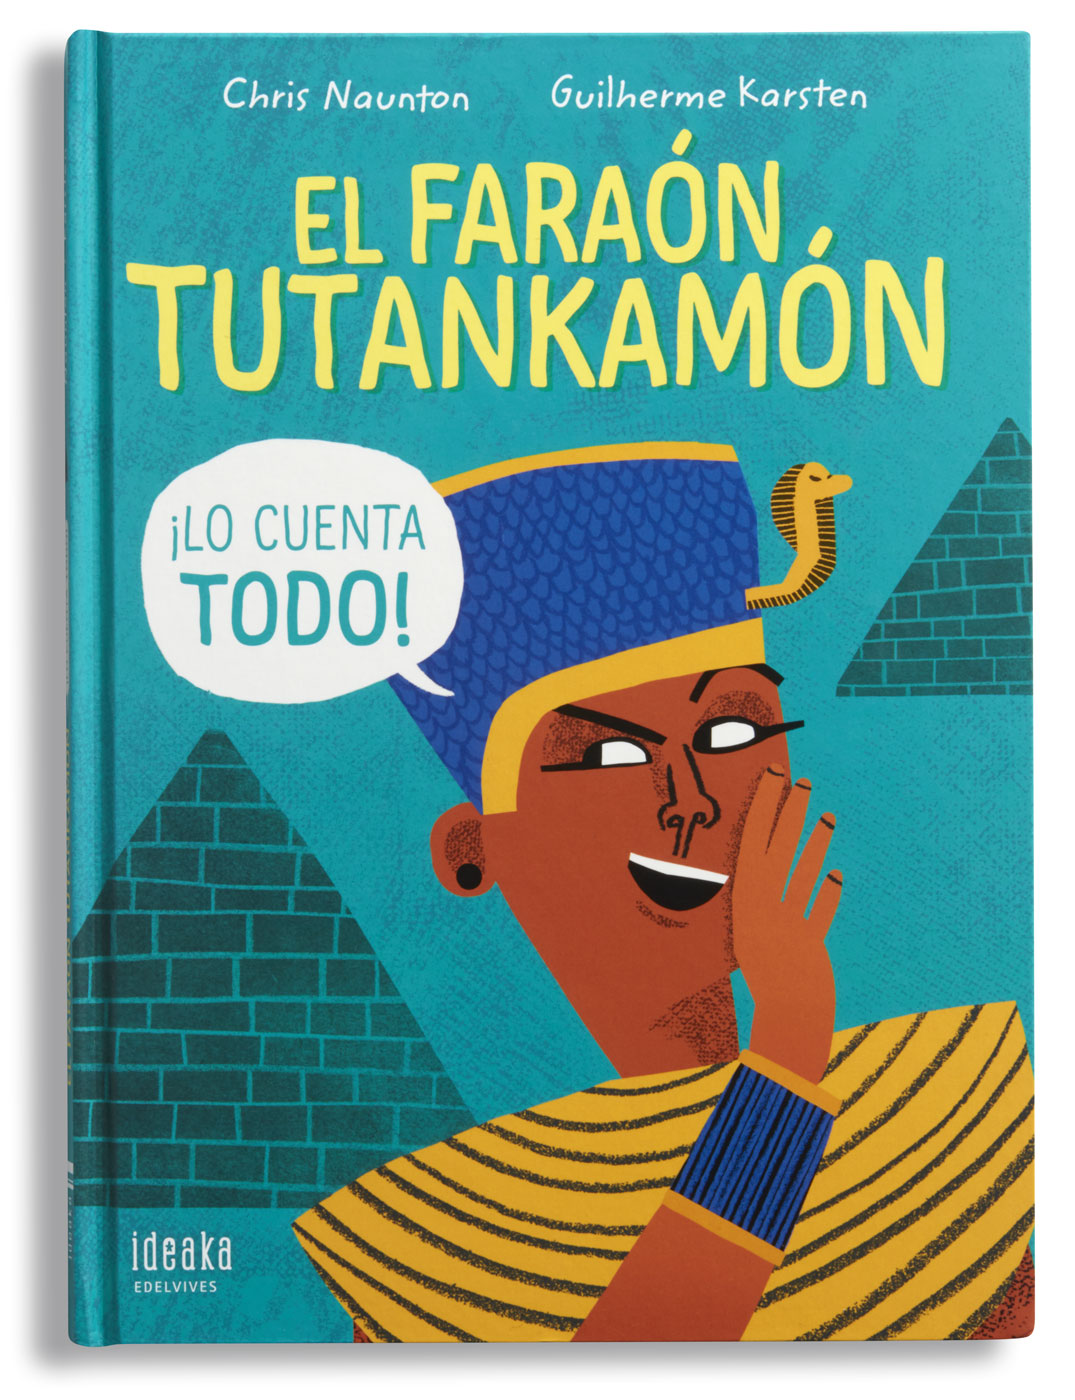 El faraón Tutankamón lo cuenta todo